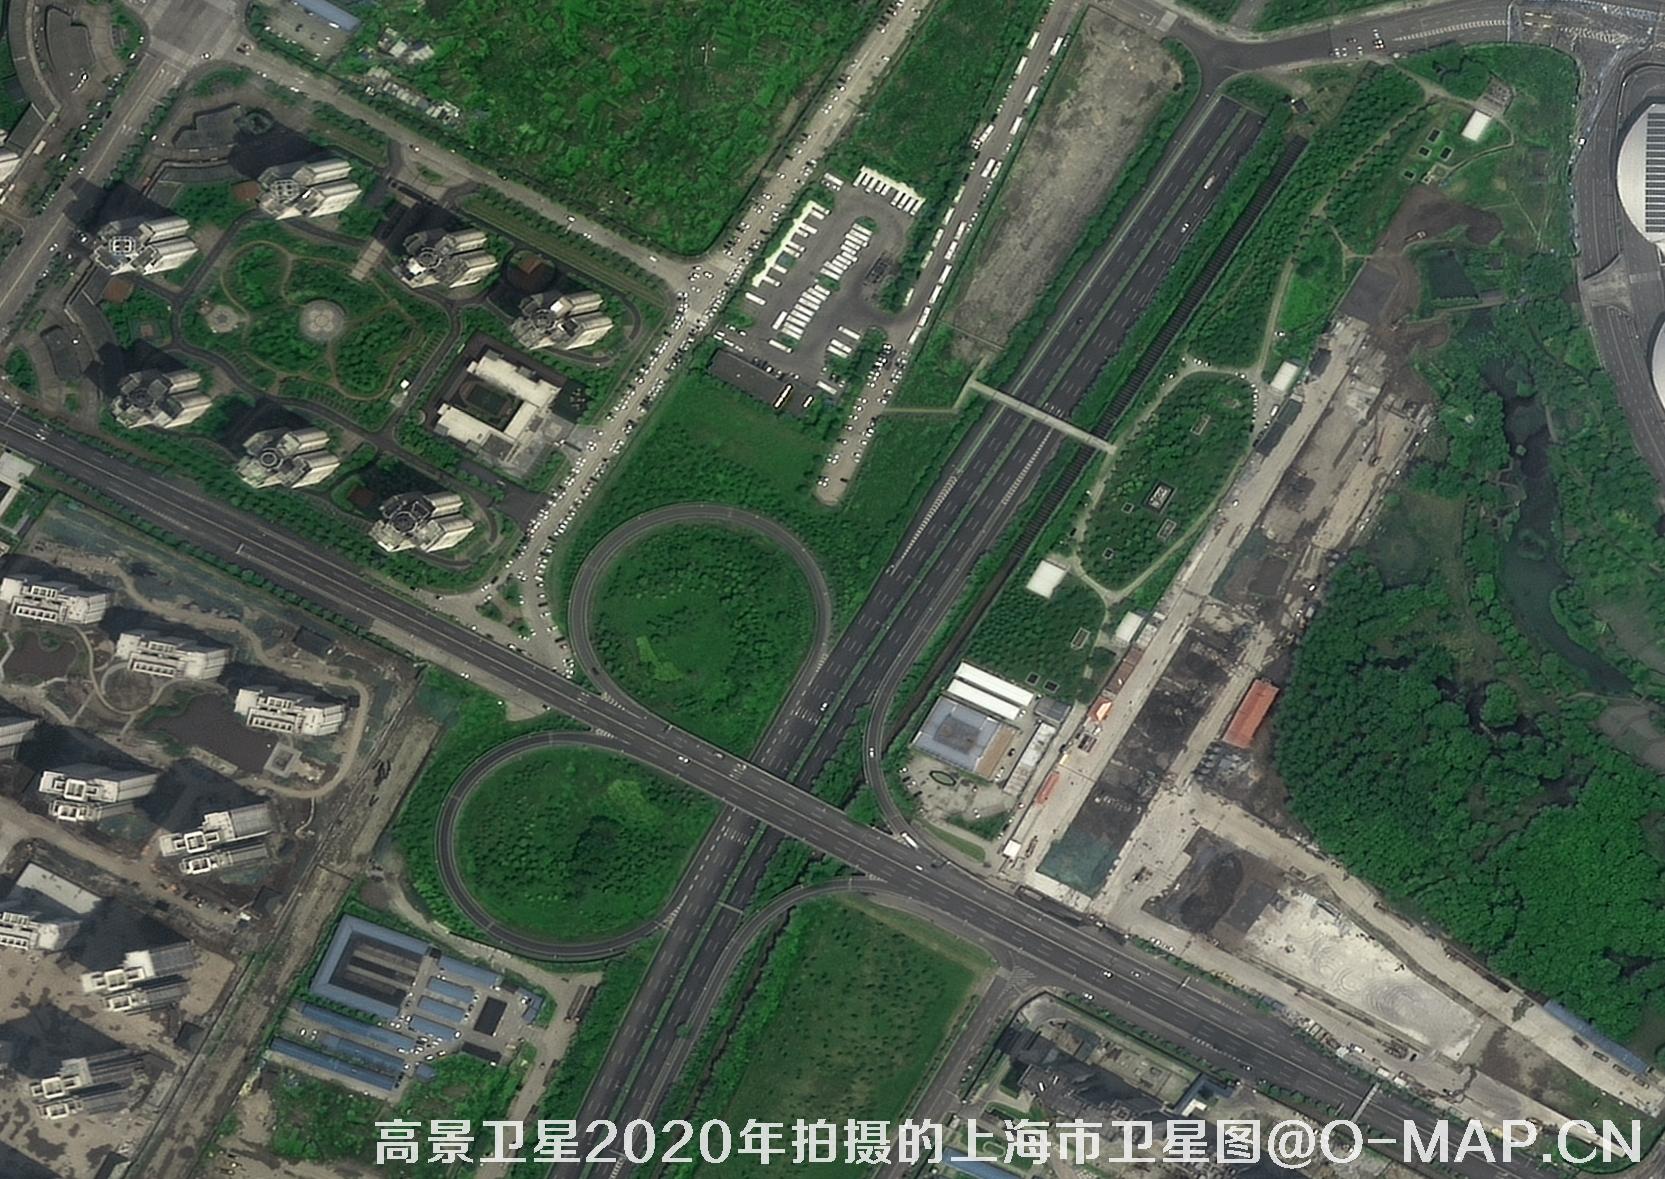 0.5米分辨率高景卫星2020年拍摄的武汉市卫星图